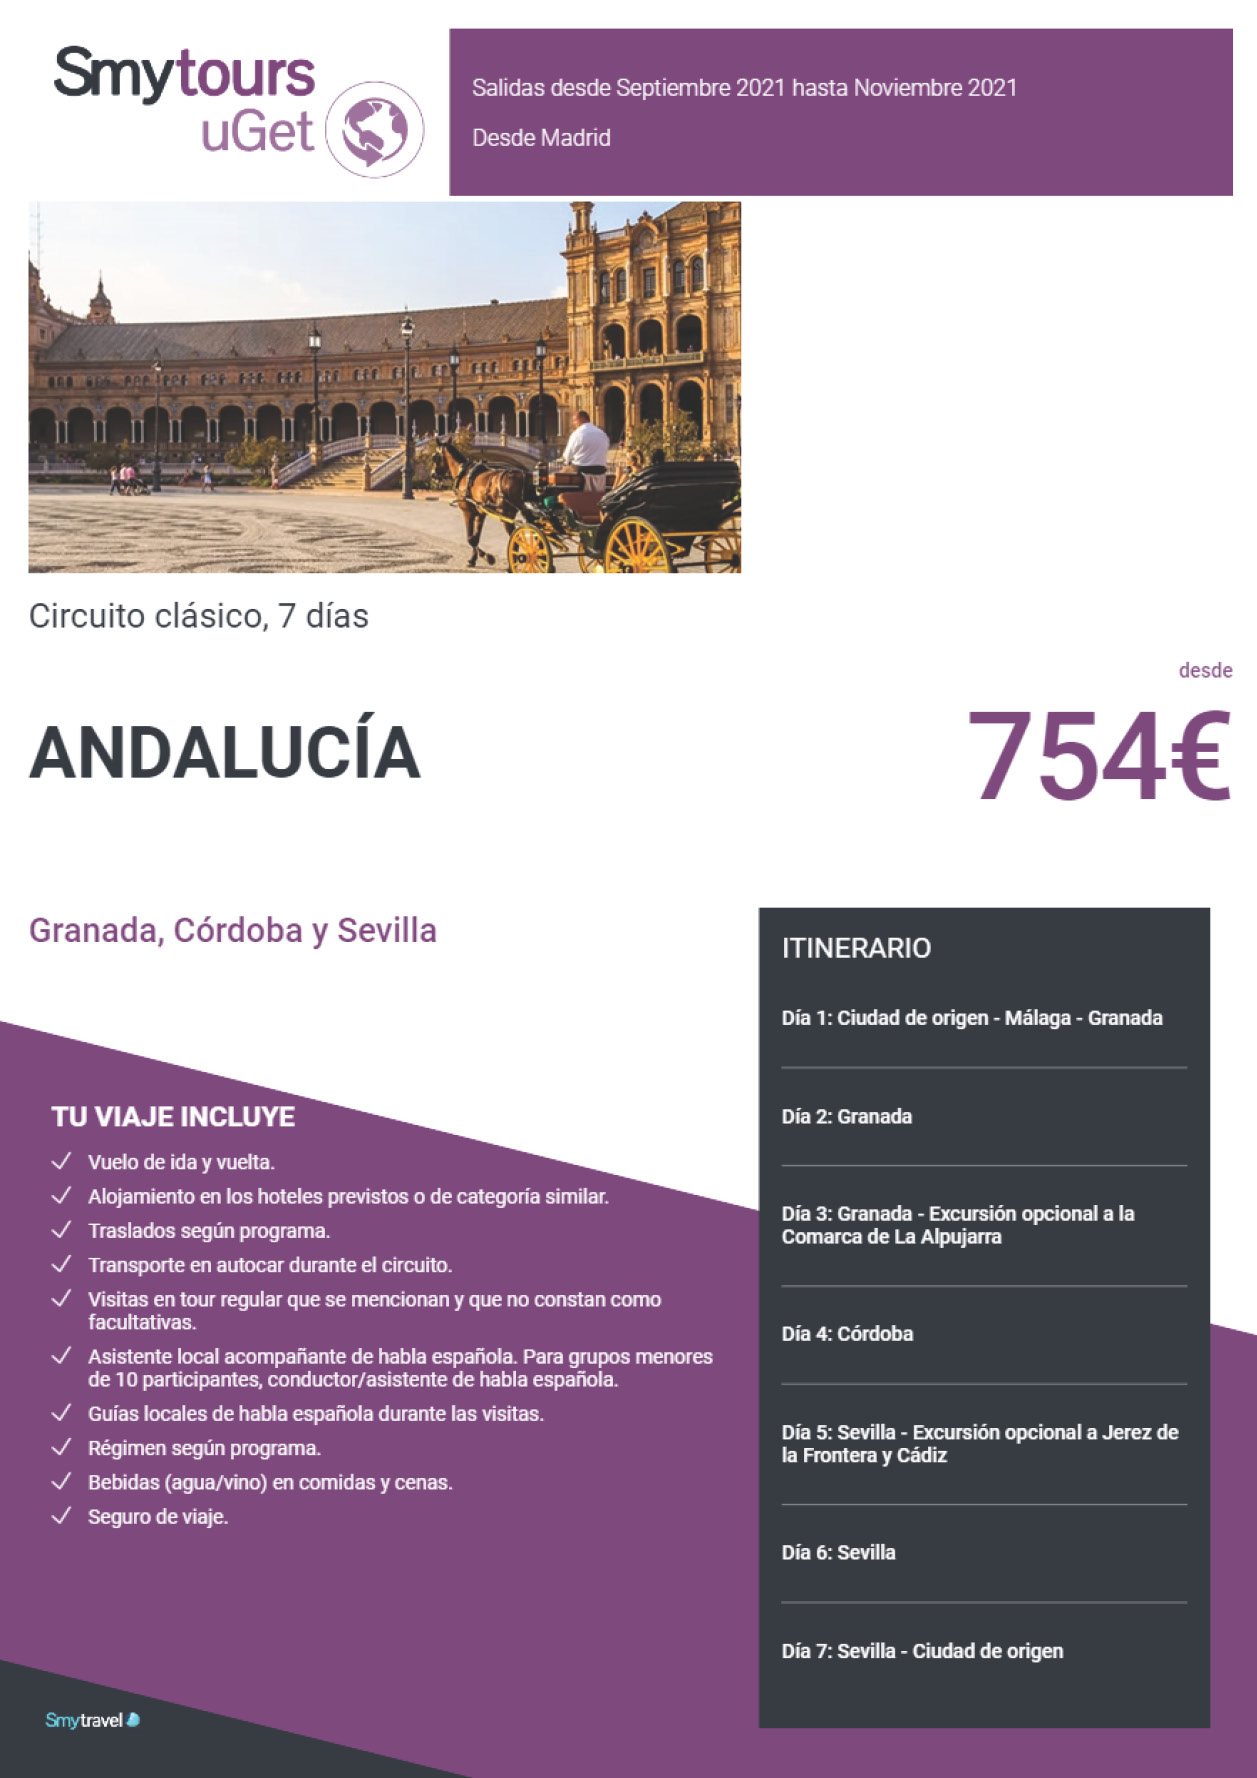 Oferta Smytravel Circuito Granada Cordoba y Sevilla 7 dias salidas Madrid desde 754 €